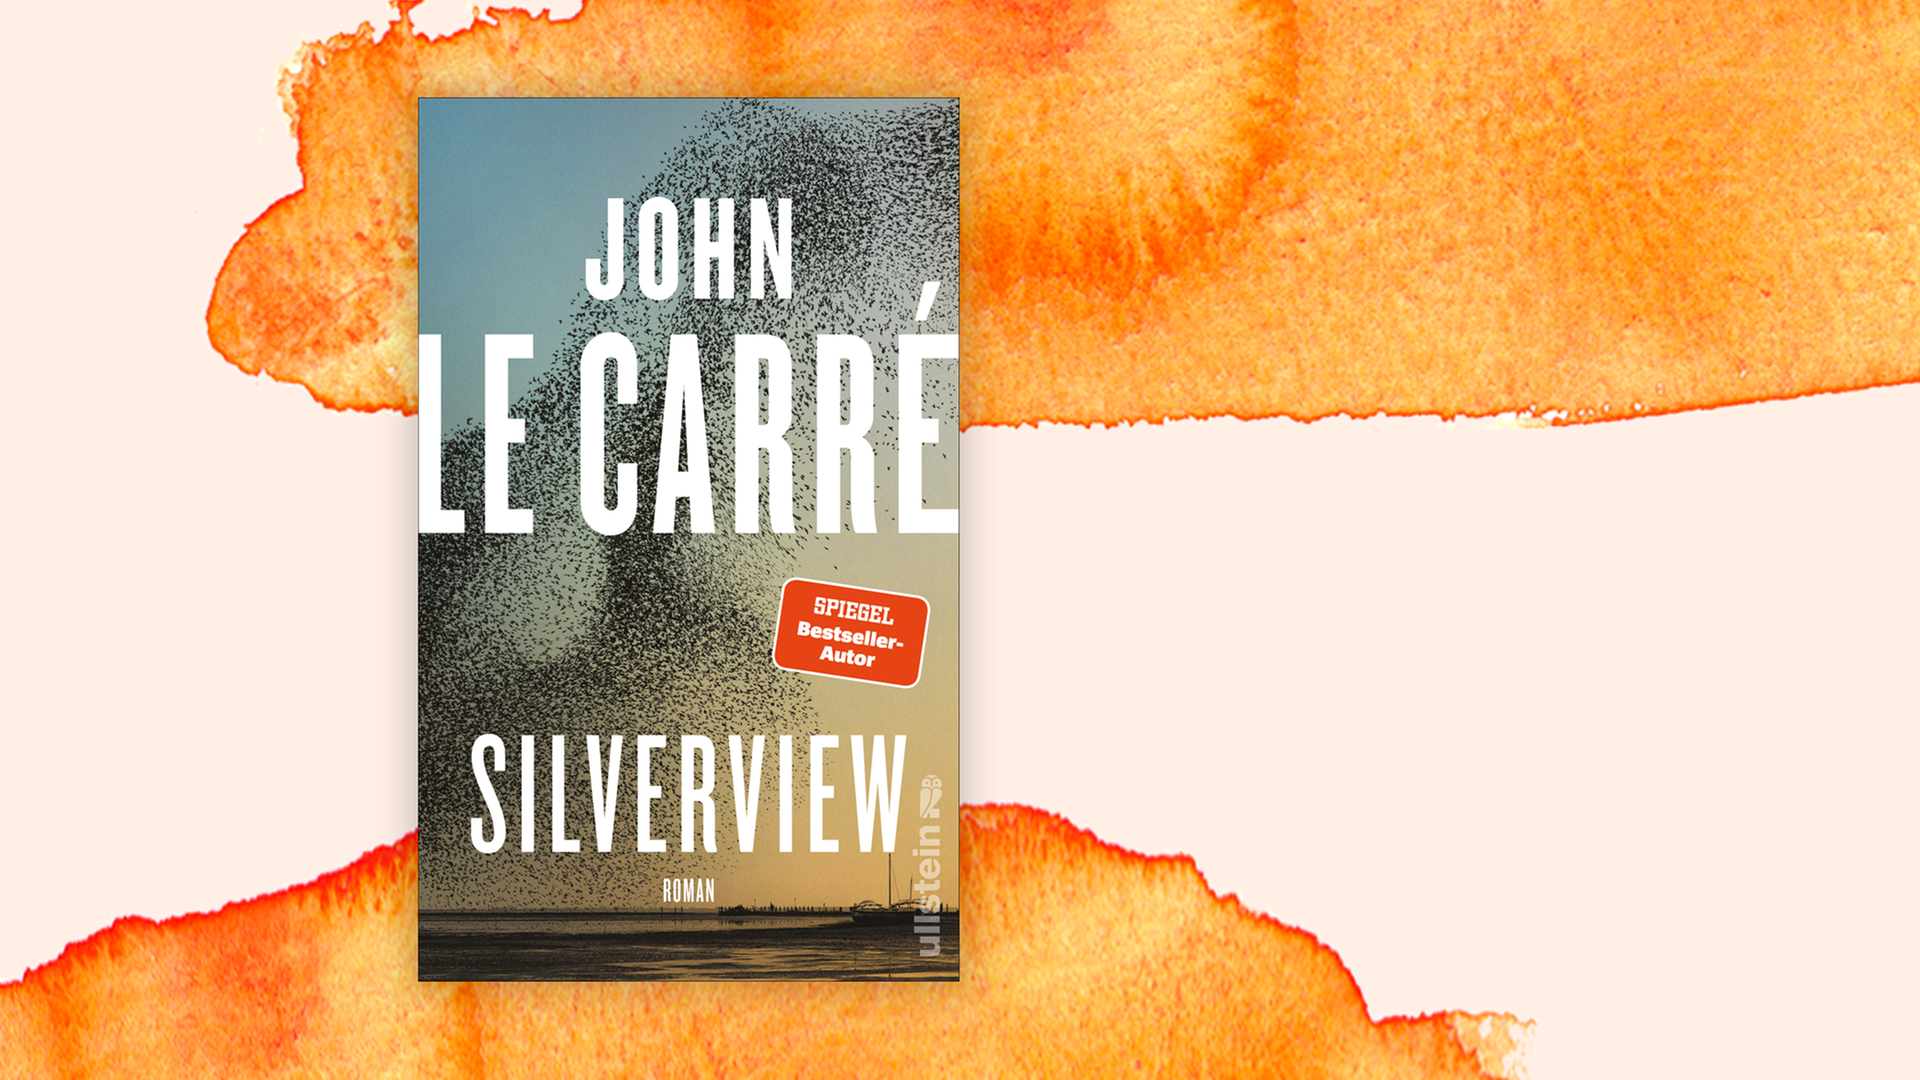 Zu sehen ist das Cover des Krimis "Silverview" von John le Carré.